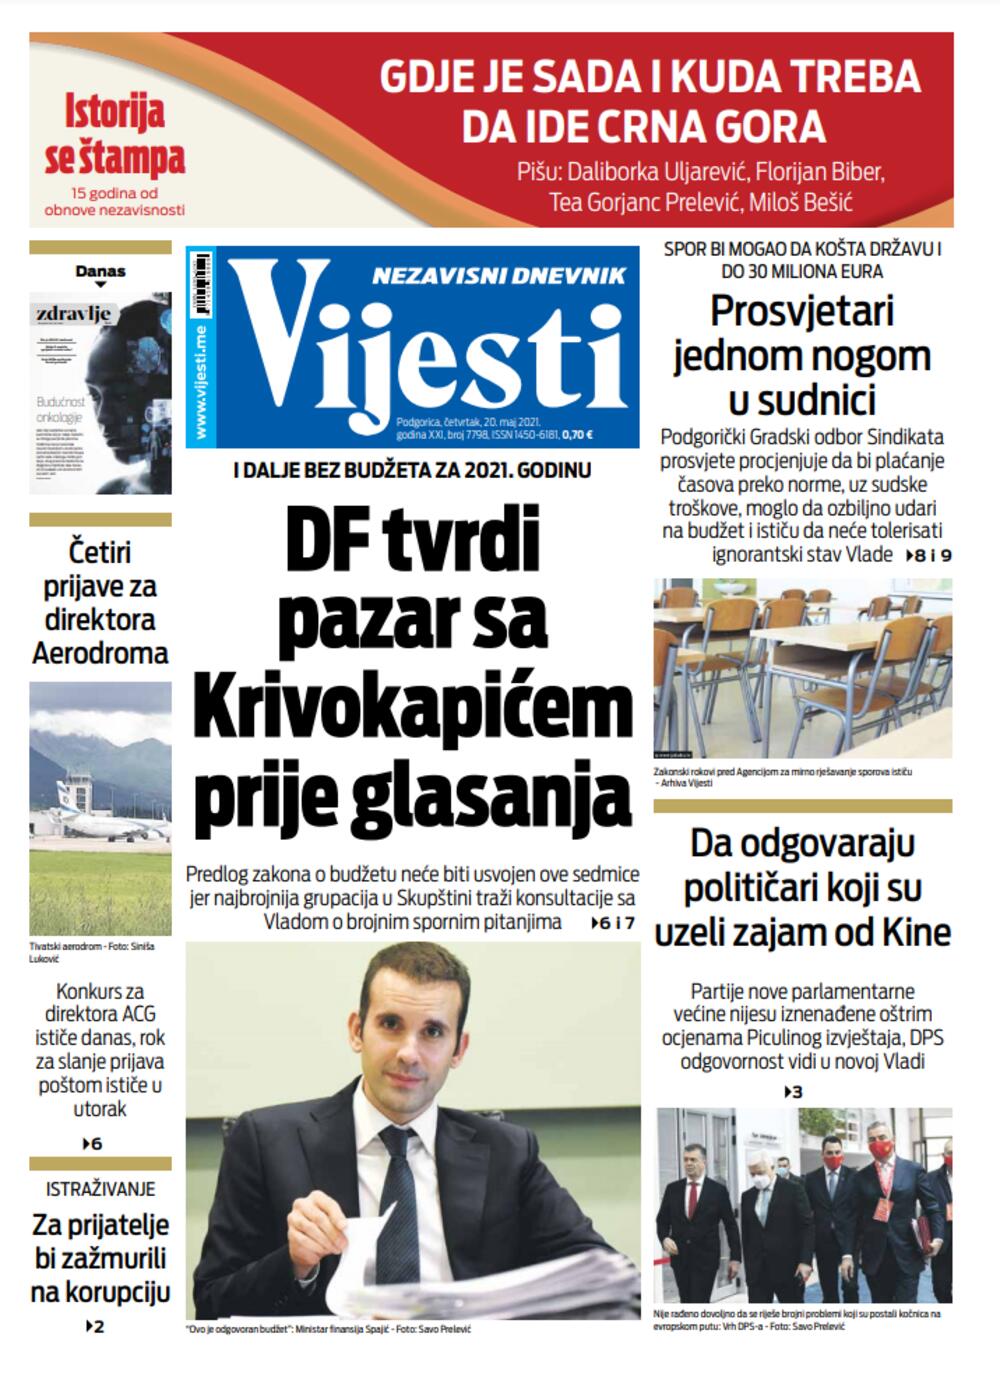 Naslovna strana "Vijesti" za četvrtak 20. maj 2021. godine, Foto: Vijesti